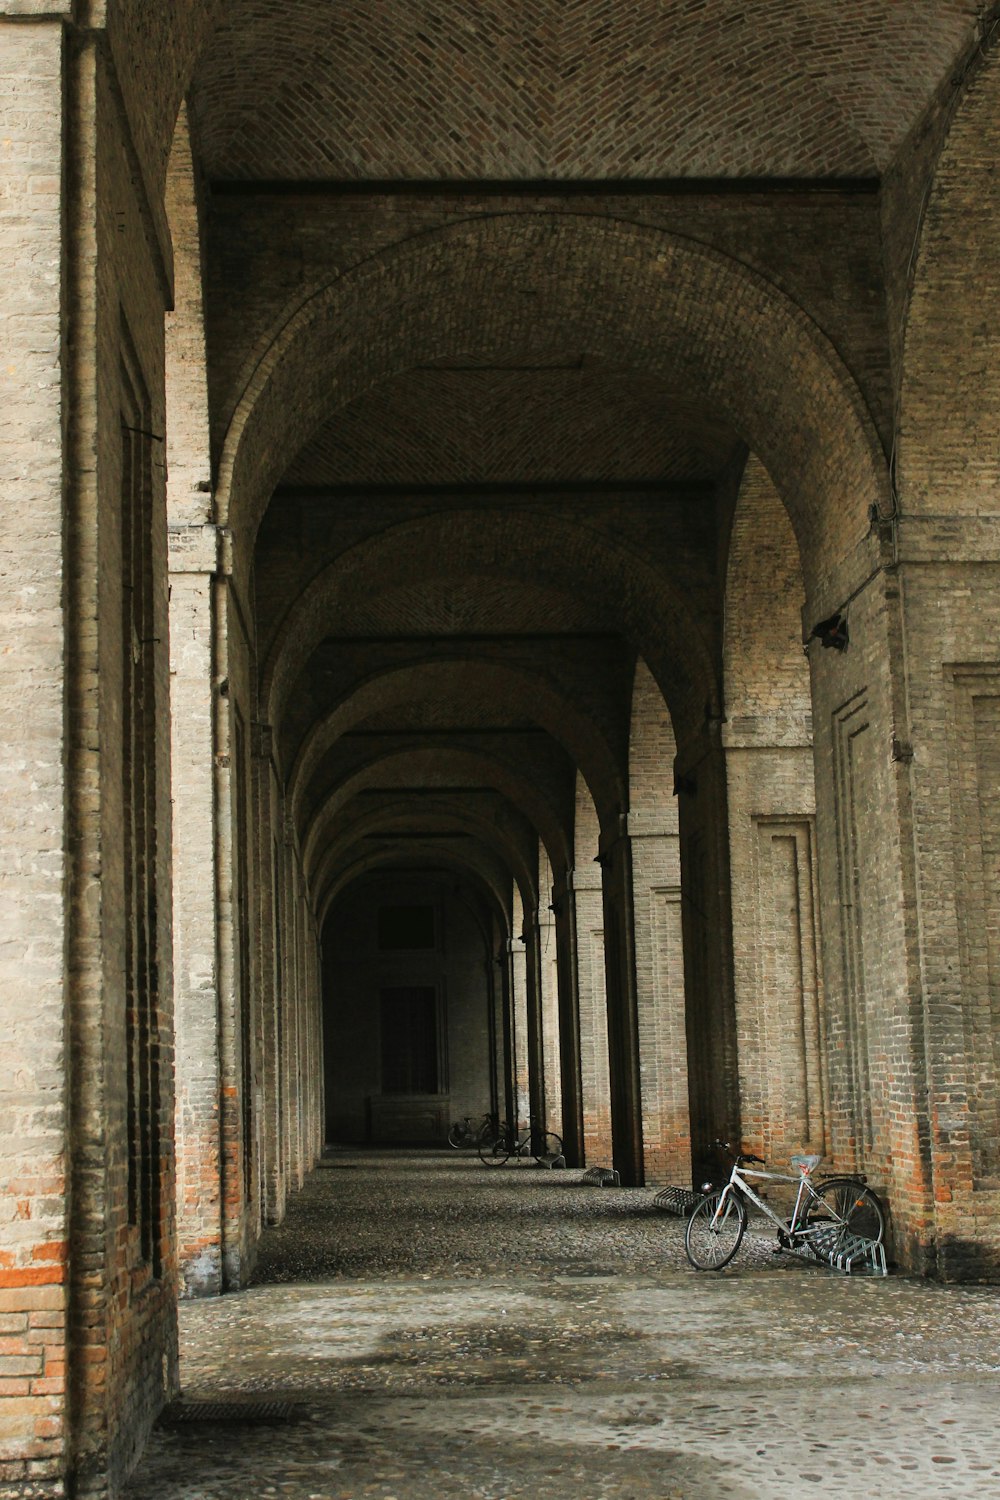 uma bicicleta está estacionada em um túnel entre dois edifícios